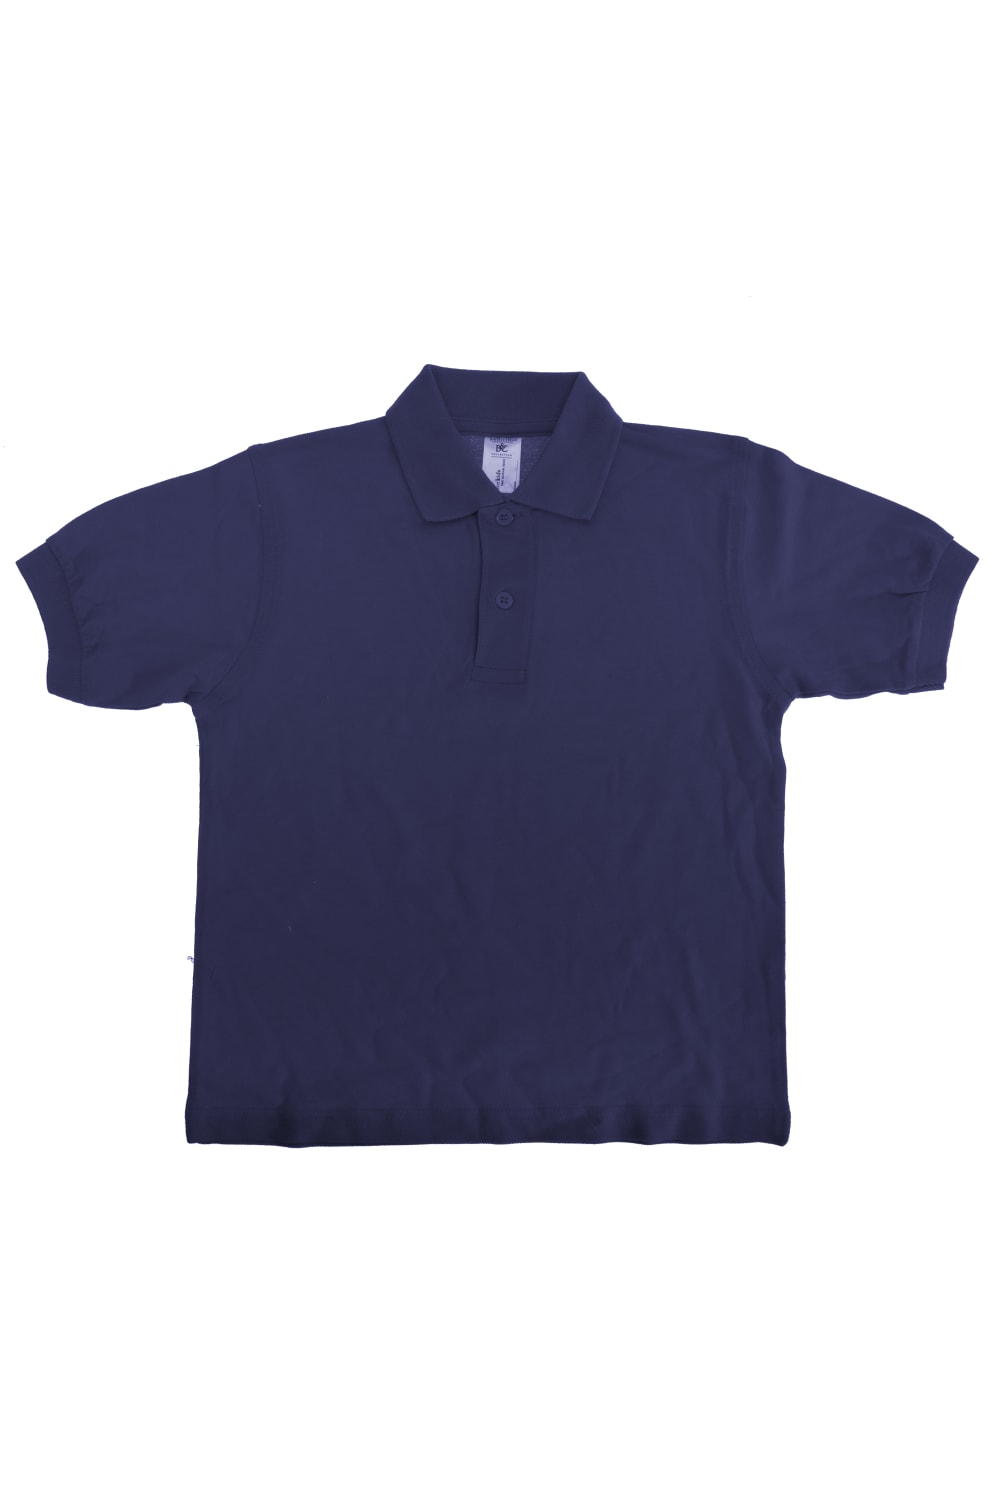 B&C Big Girls Kids/Childrens Safran Polo Shirt (Navy Blue)